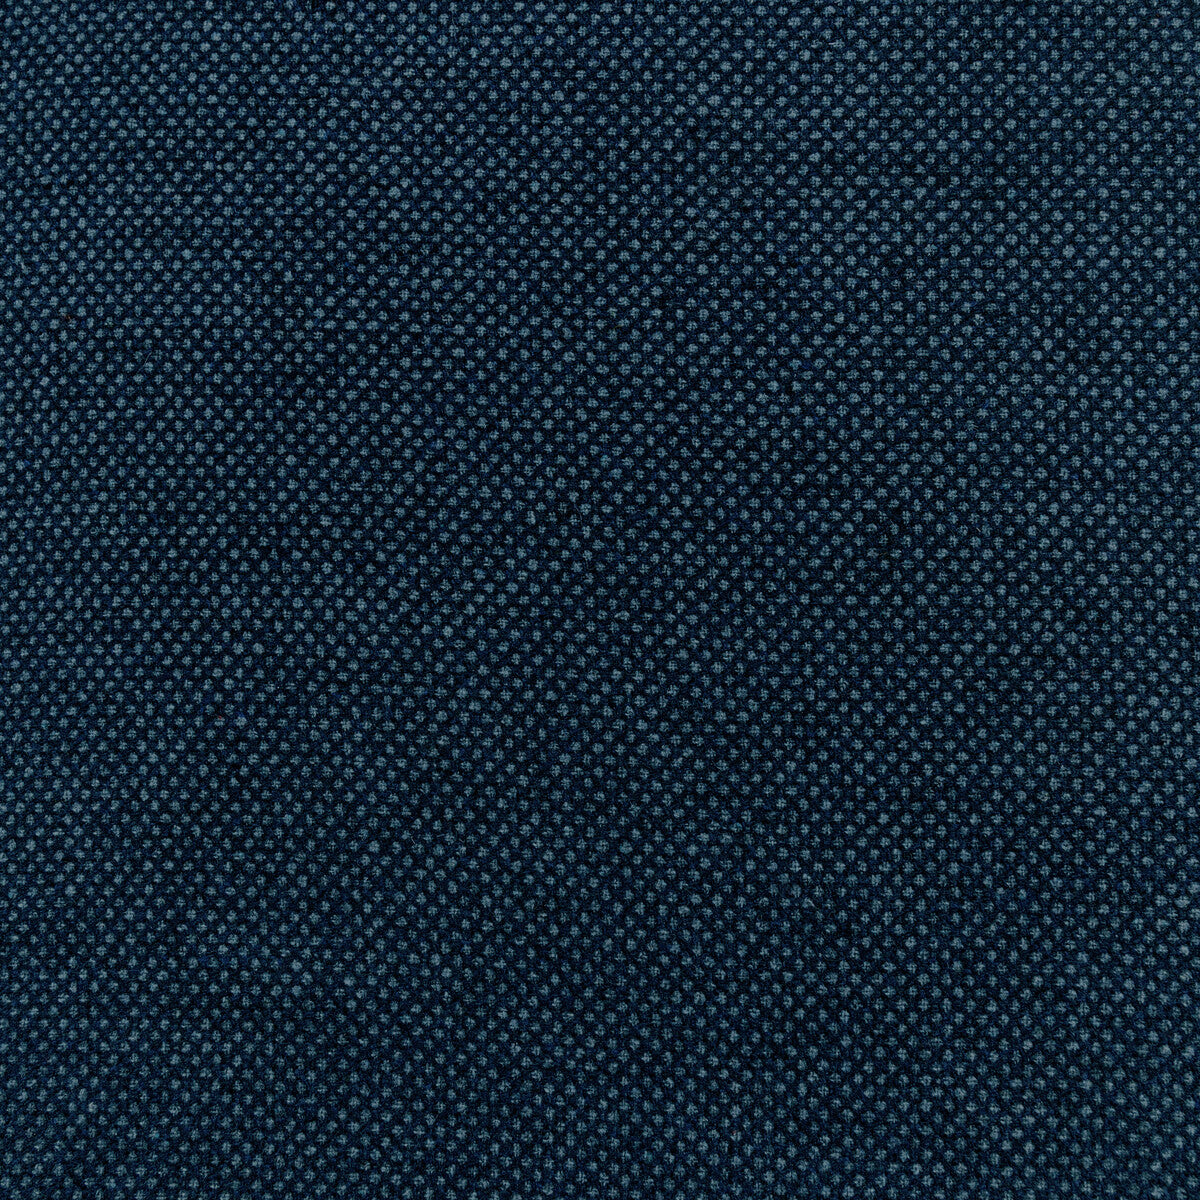 Kravet Design fabric in 36308-50 color - pattern 36308.50.0 - by Kravet Design